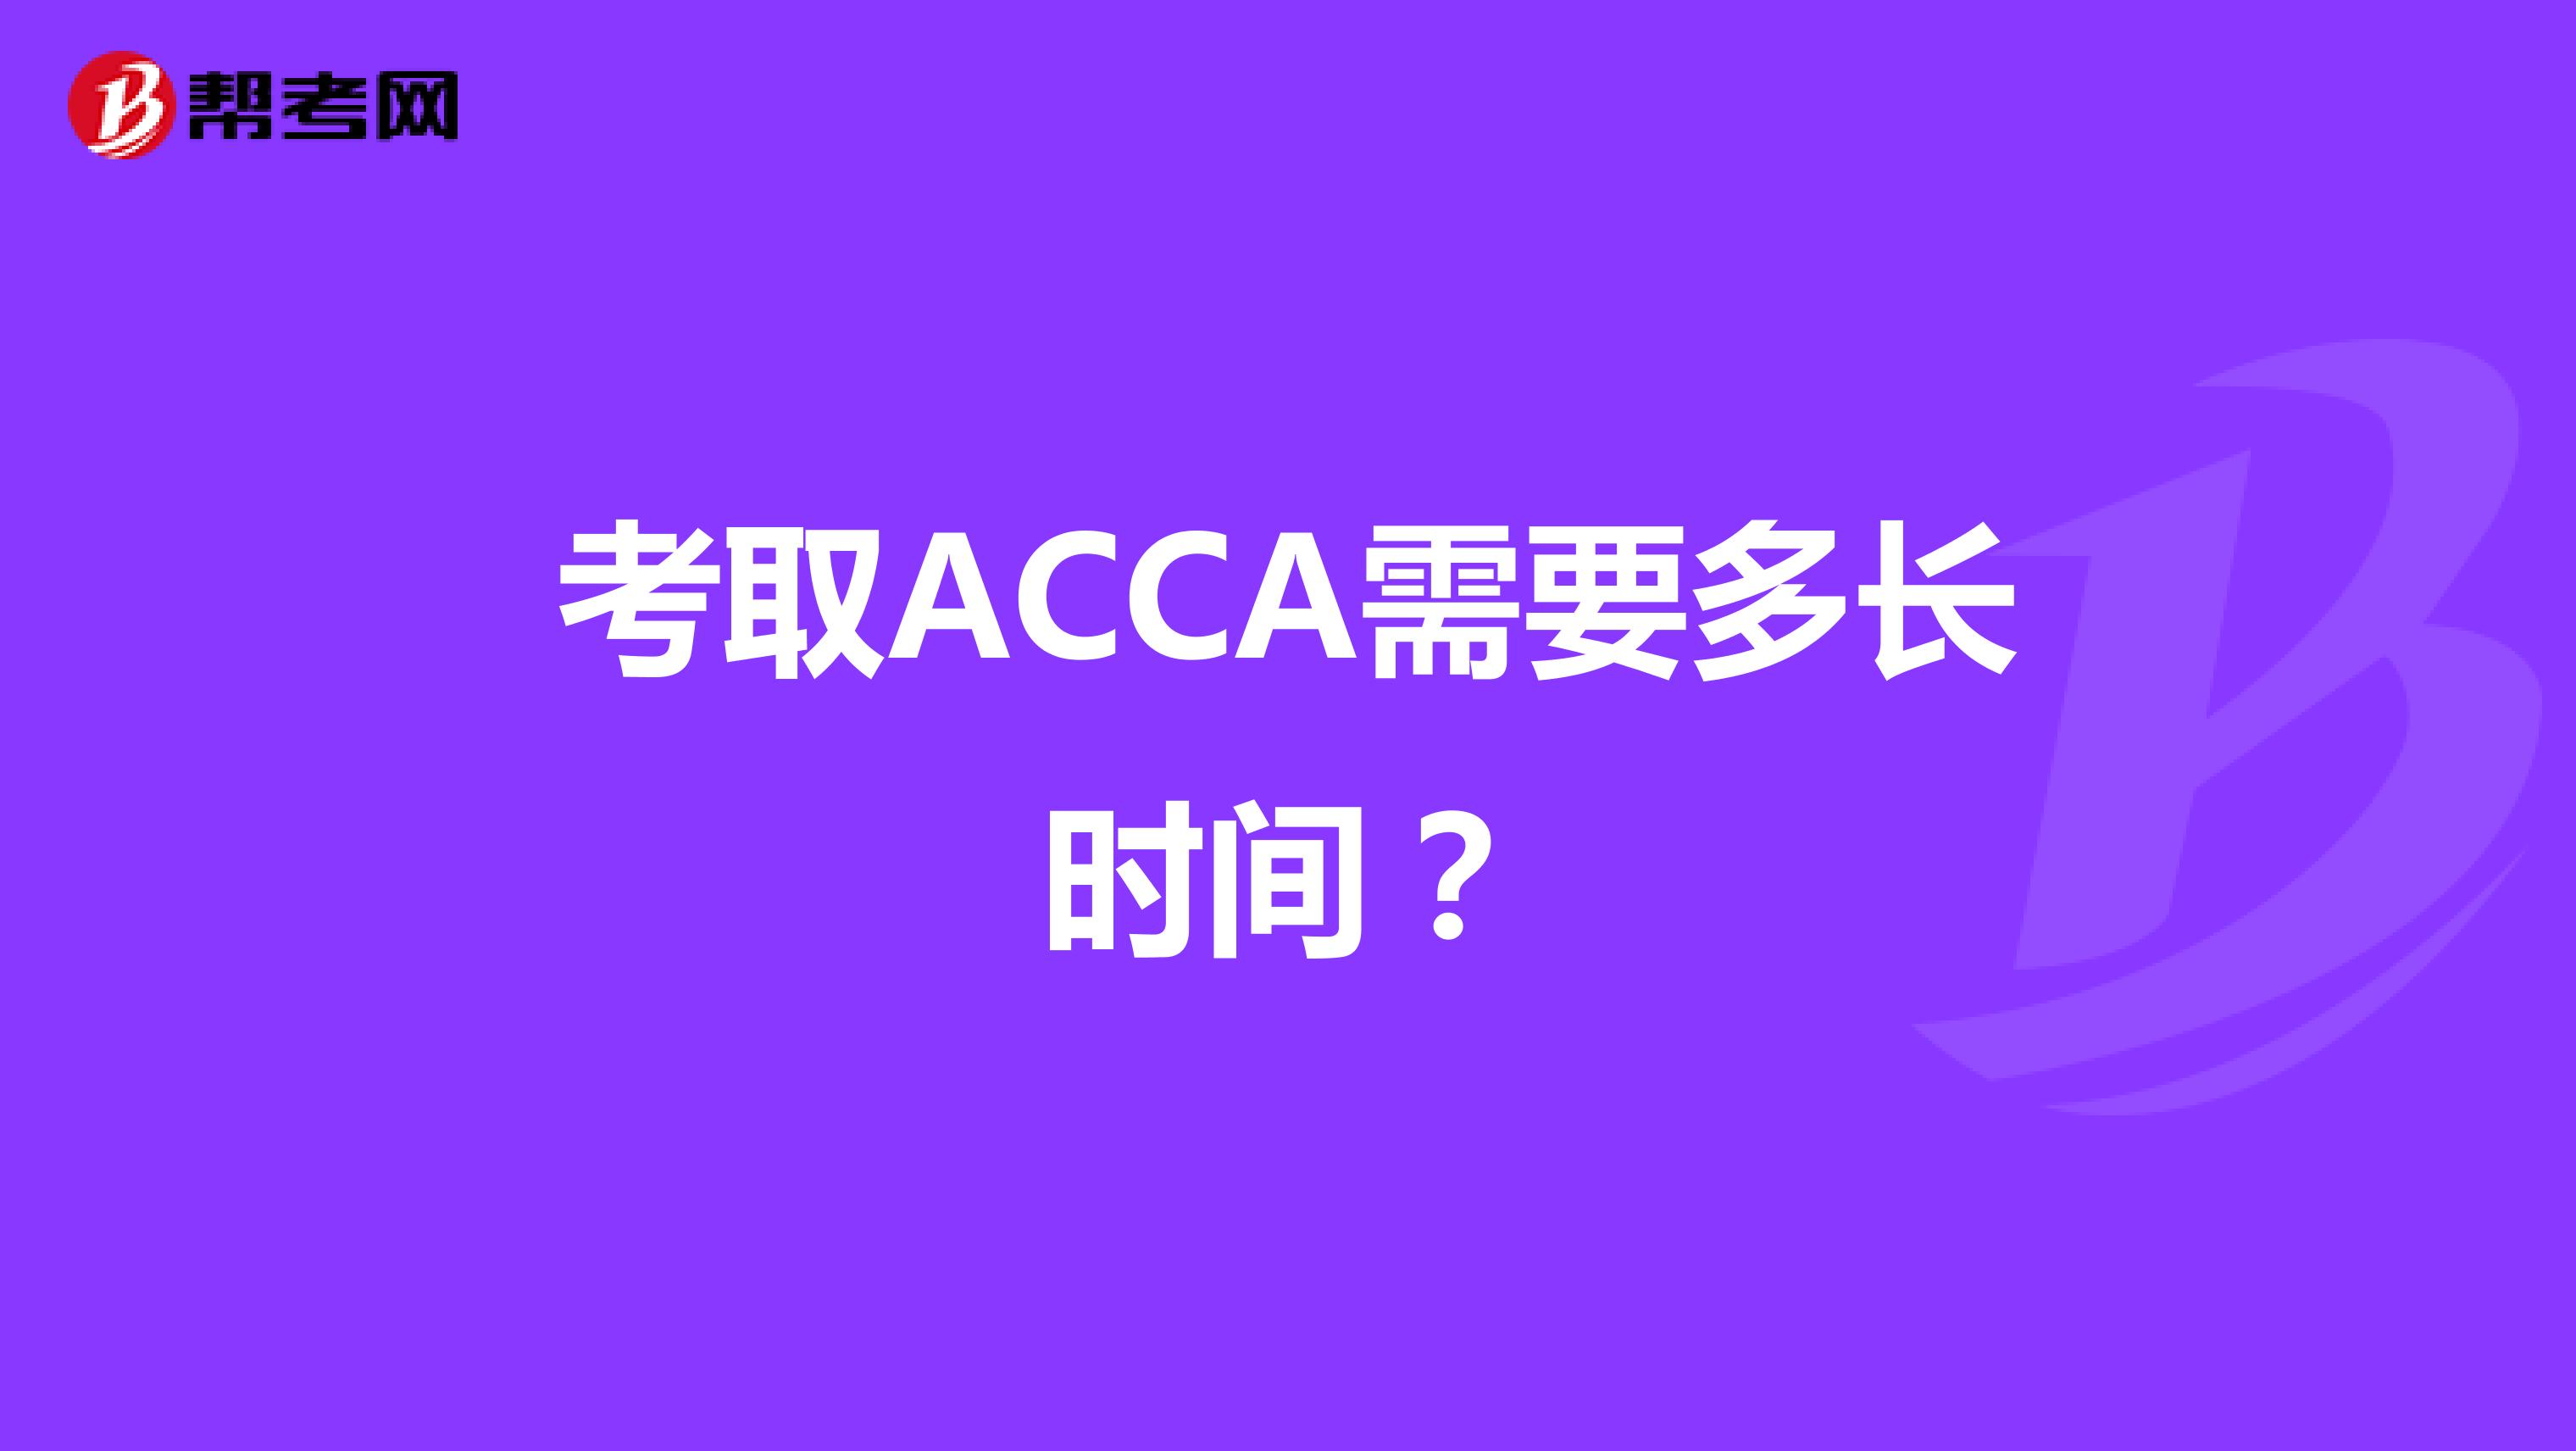 考取ACCA需要多长时间？